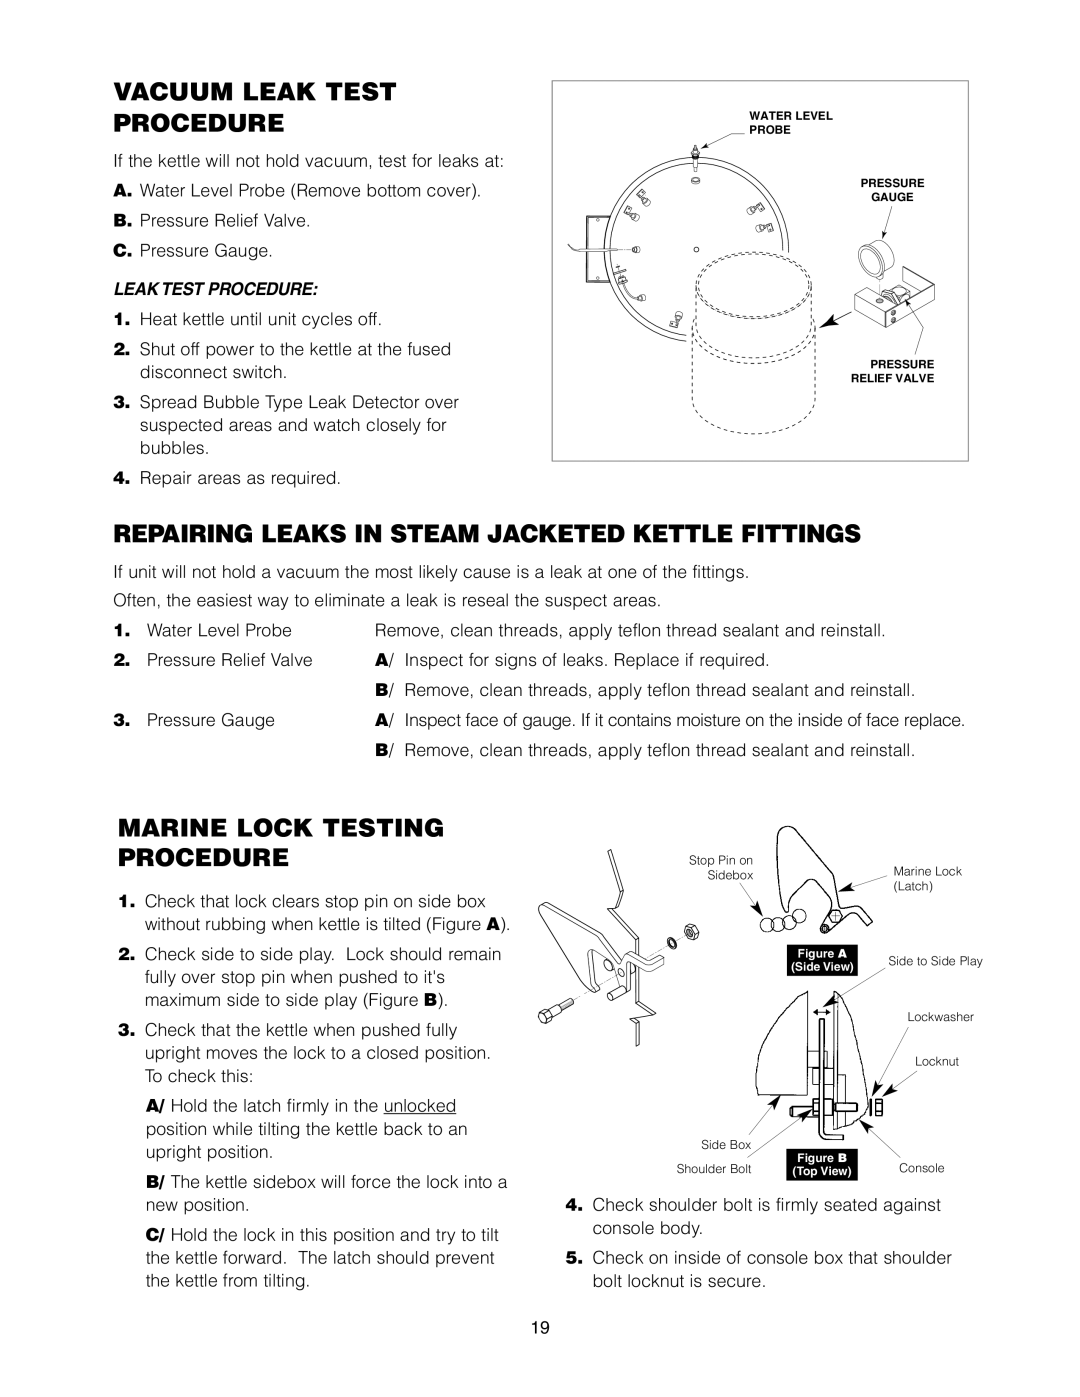 Cleveland Range KET-3-T manual Vacuum Leak Test Procedure, Repairing Leaks In Steam Jacketed Kettle Fittings 